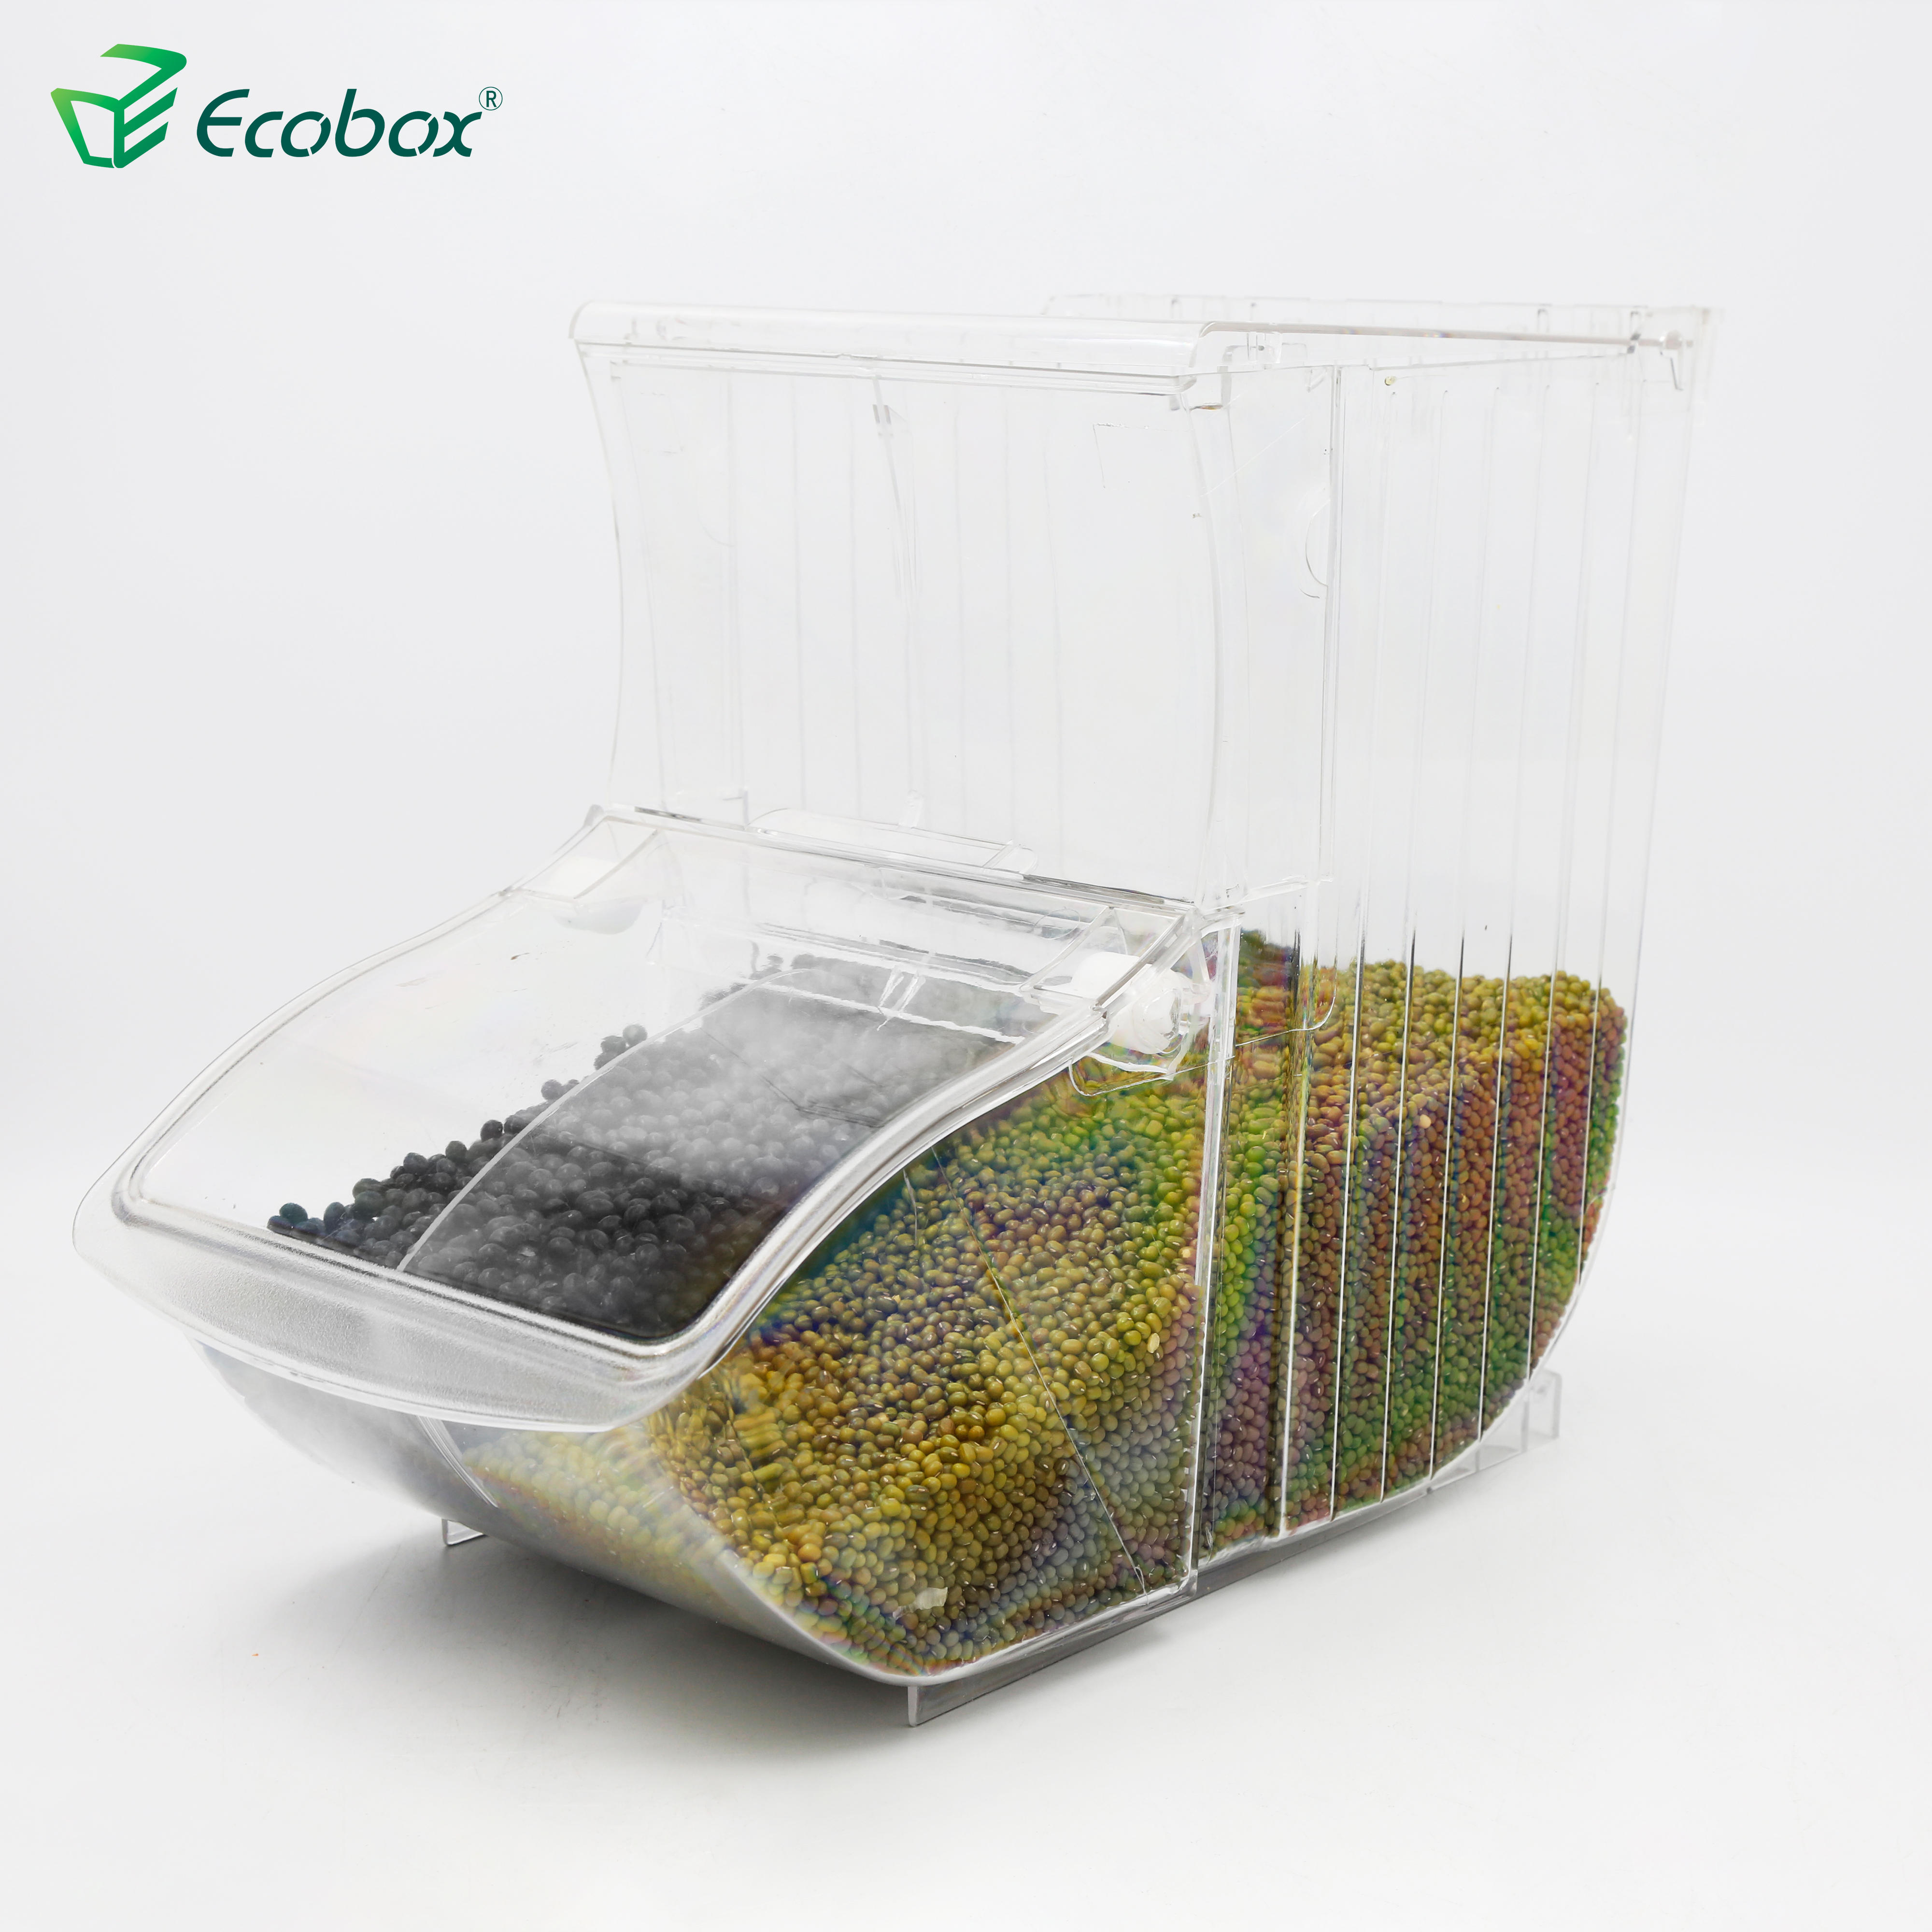 Ecobox SPH-003 Scoop ist